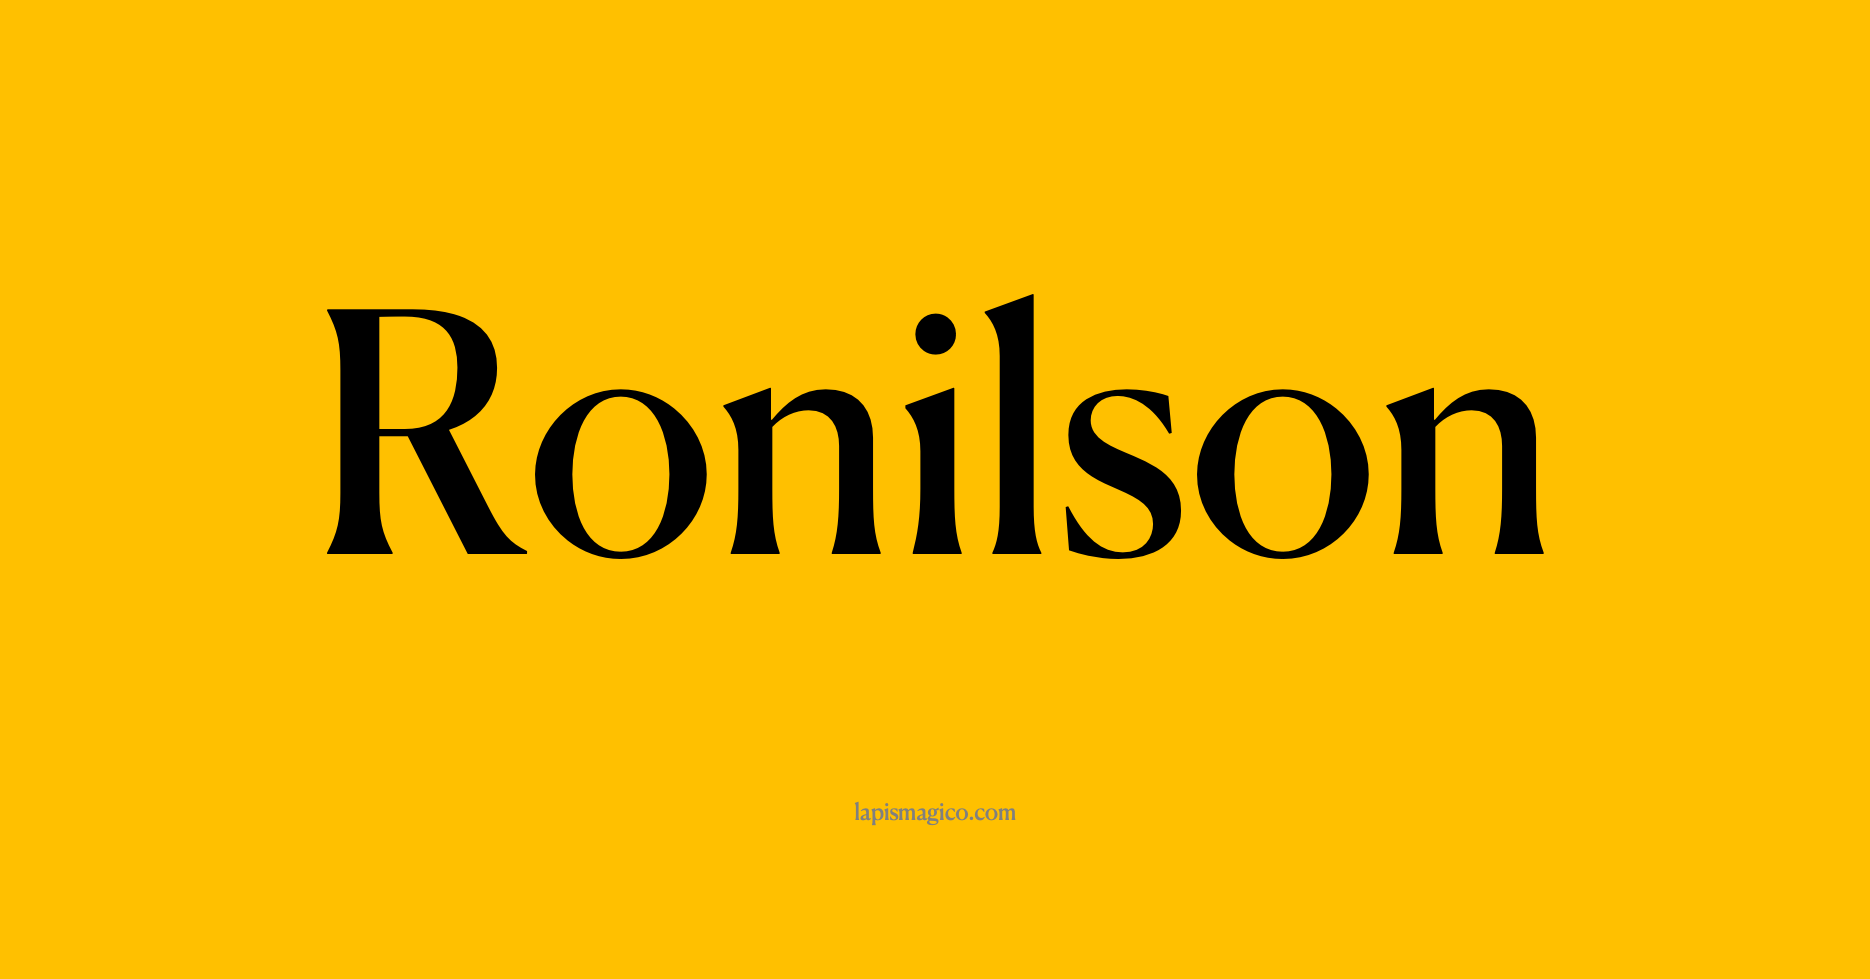 Nome Ronilson, ficha divertida com pontilhado para crianças